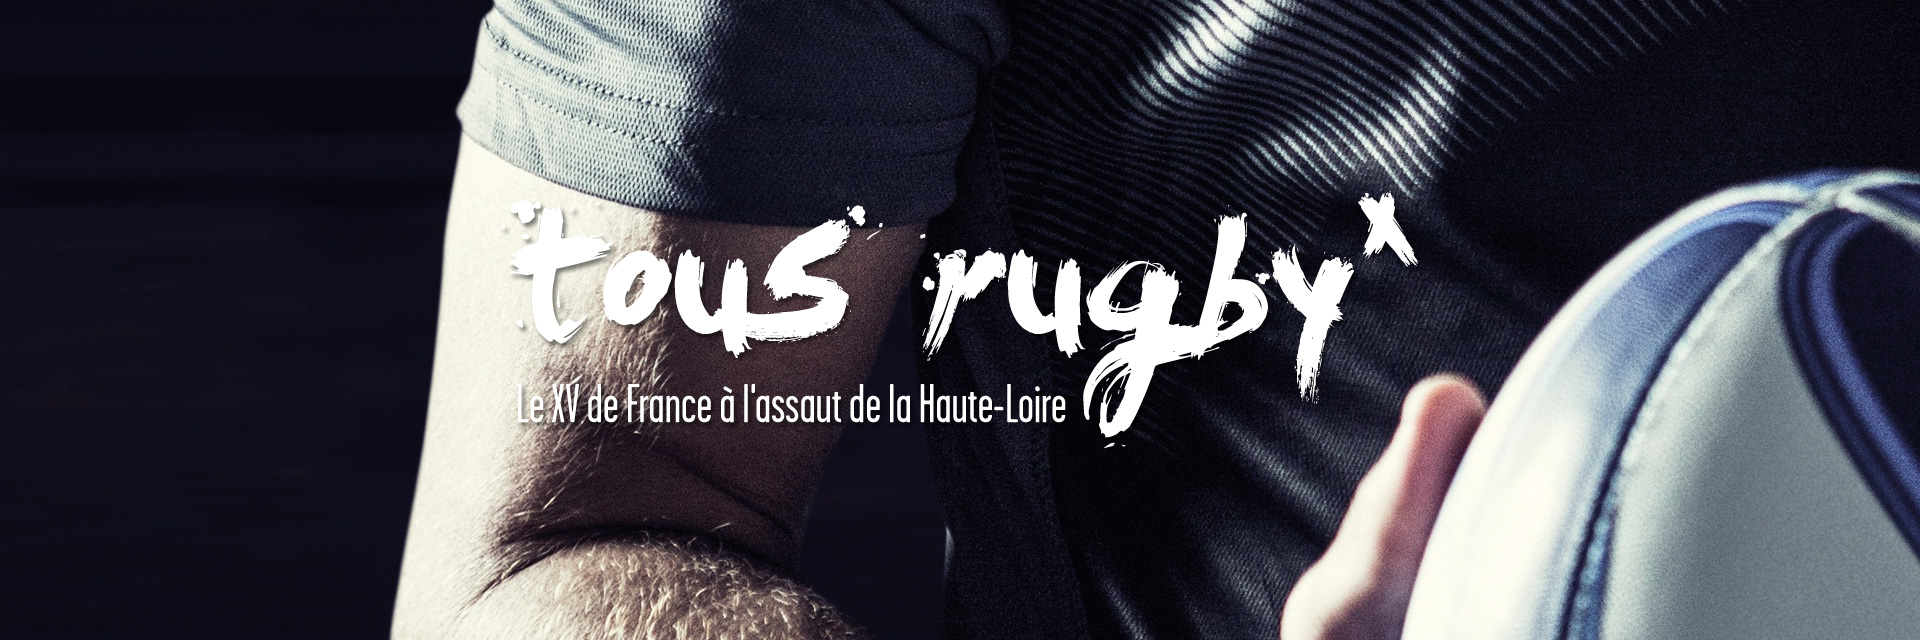 Communication de la venue de l'équipe de France de rugby en Haute-Loire imaginée par studio N°3